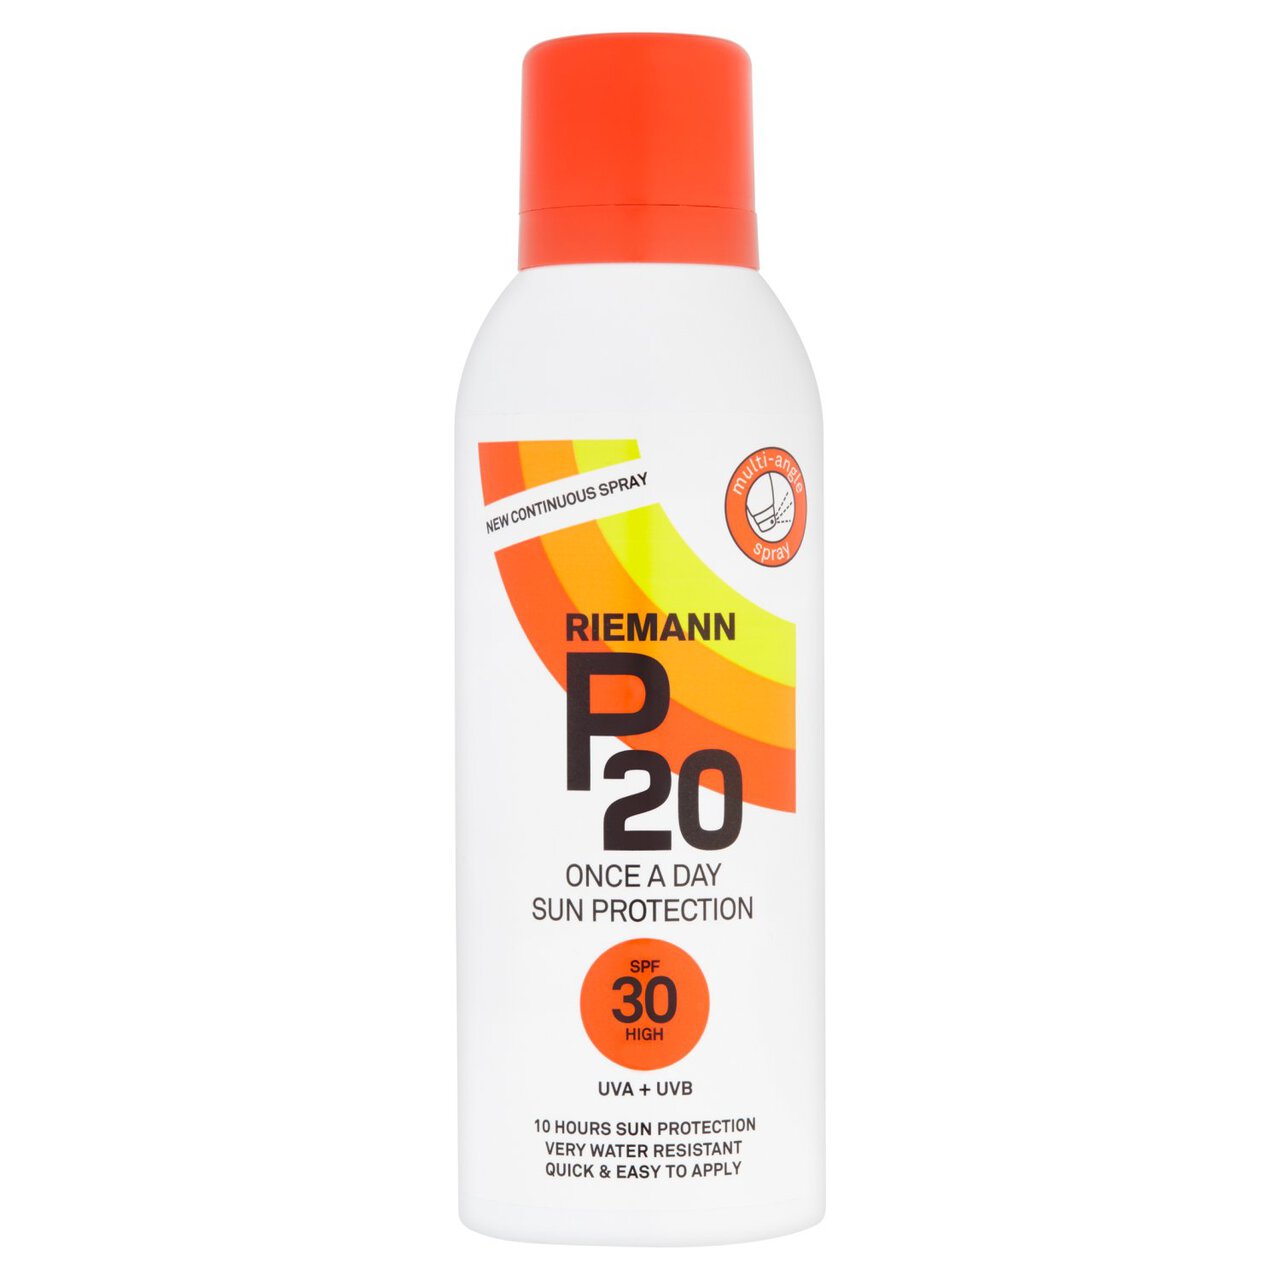 Riemann P20 SPF 30 Sun Protection Continuous Spray 150ml